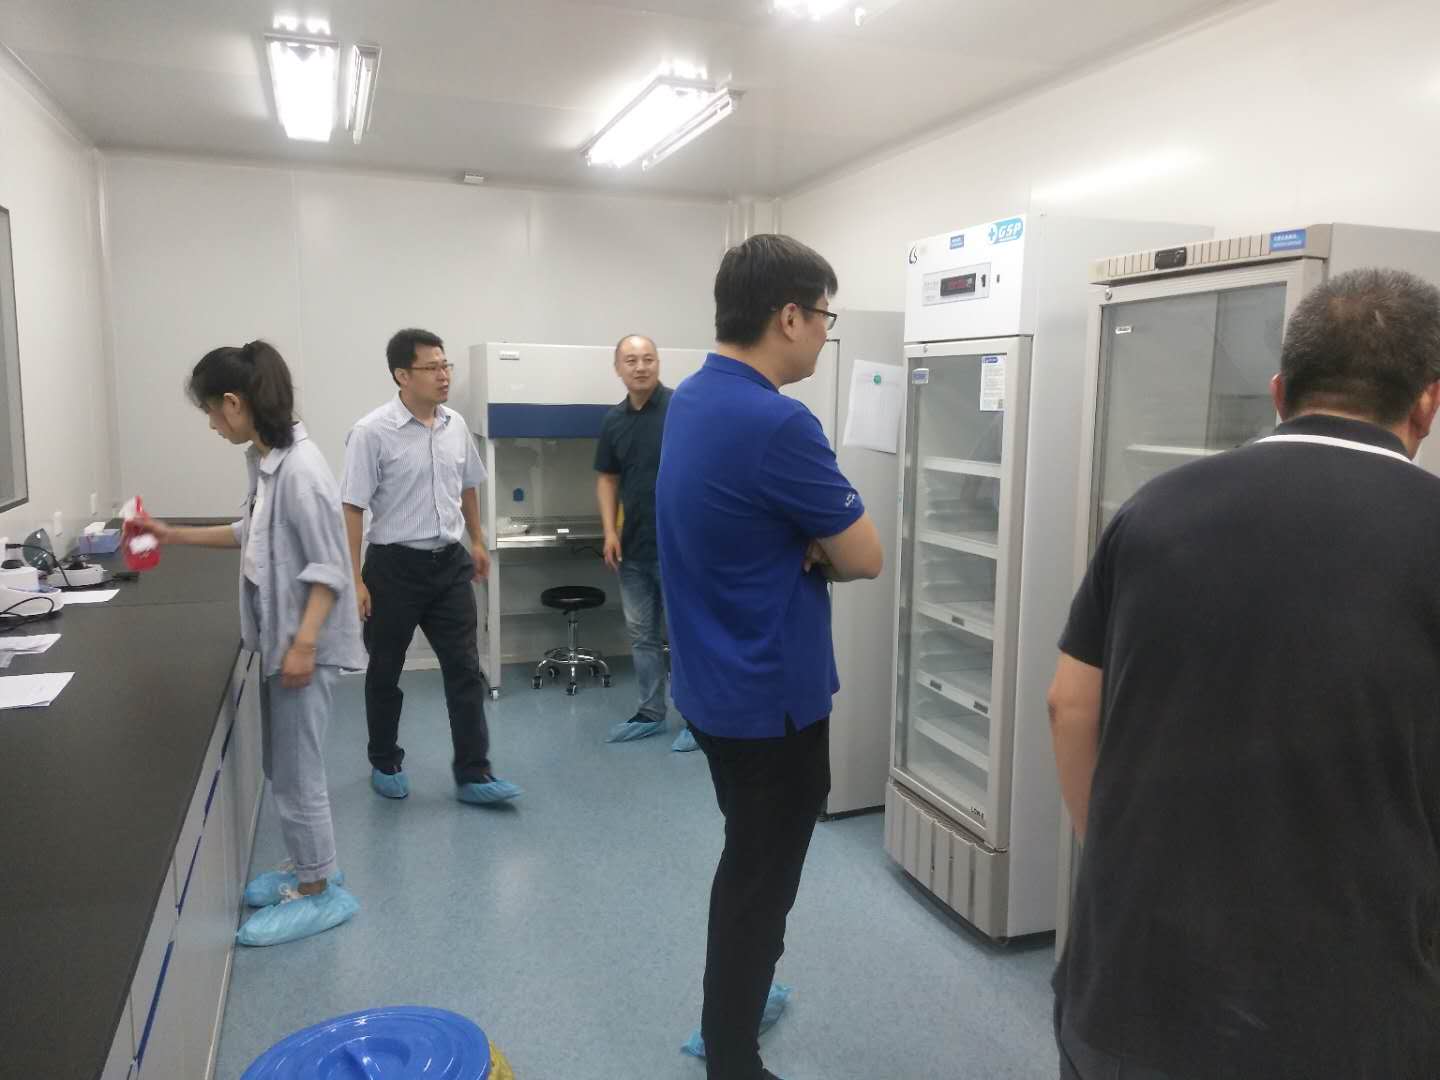 喜报丨 江苏省阜宁县疾控中心PCR实验室顺利通过省疾控专家组的验收